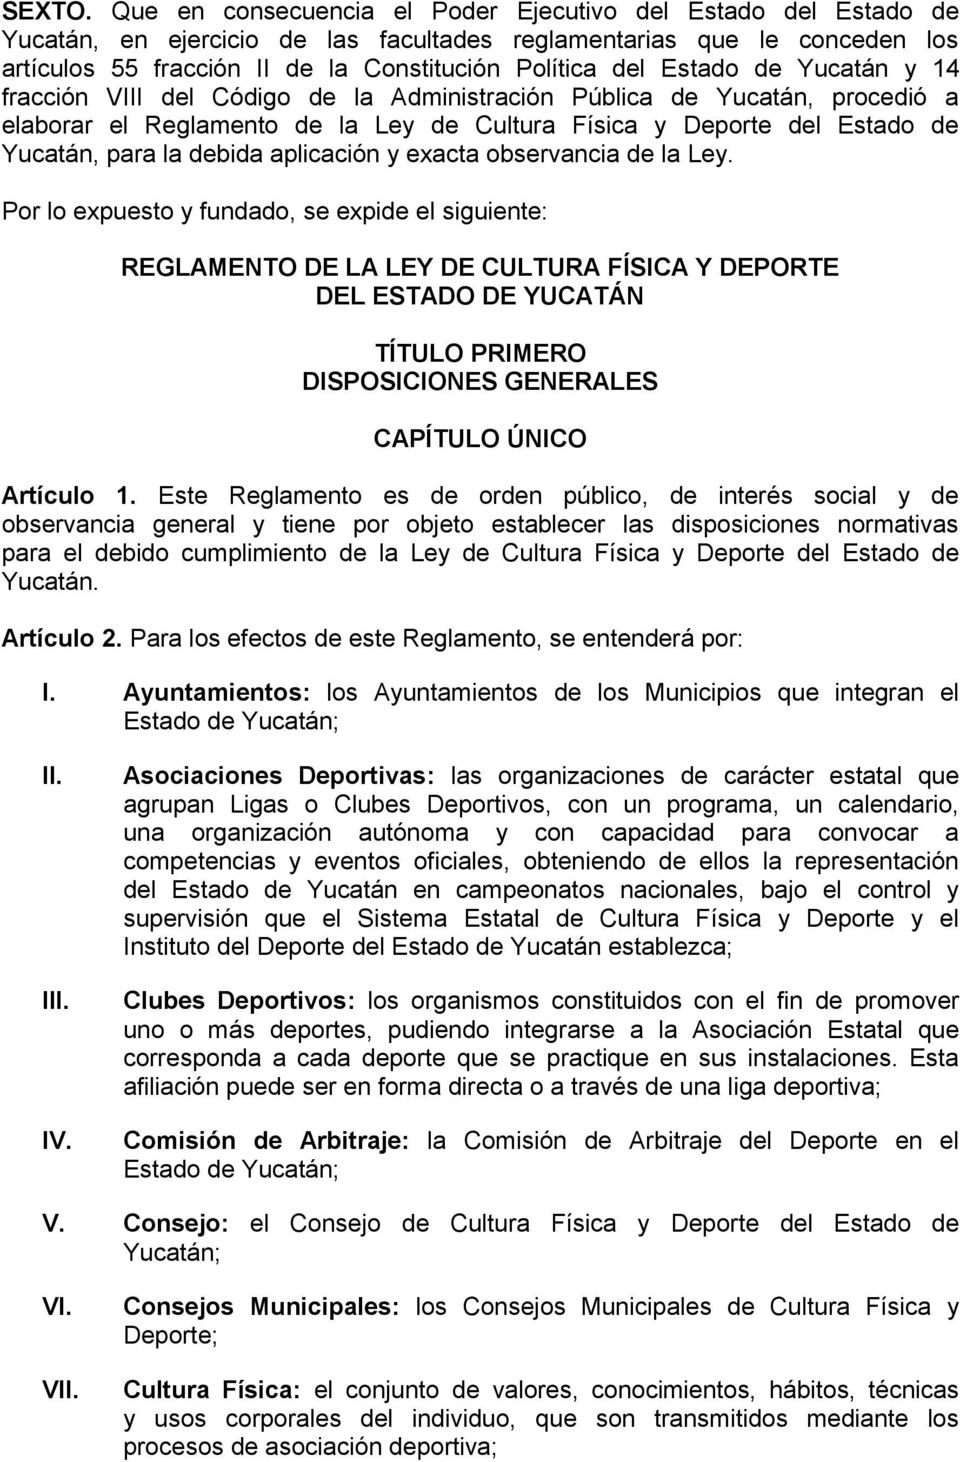 Estado de Yucatán y 14 fracción VIII del Código de la Administración Pública de Yucatán, procedió a elaborar el Reglamento de la Ley de Cultura Física y Deporte del Estado de Yucatán, para la debida